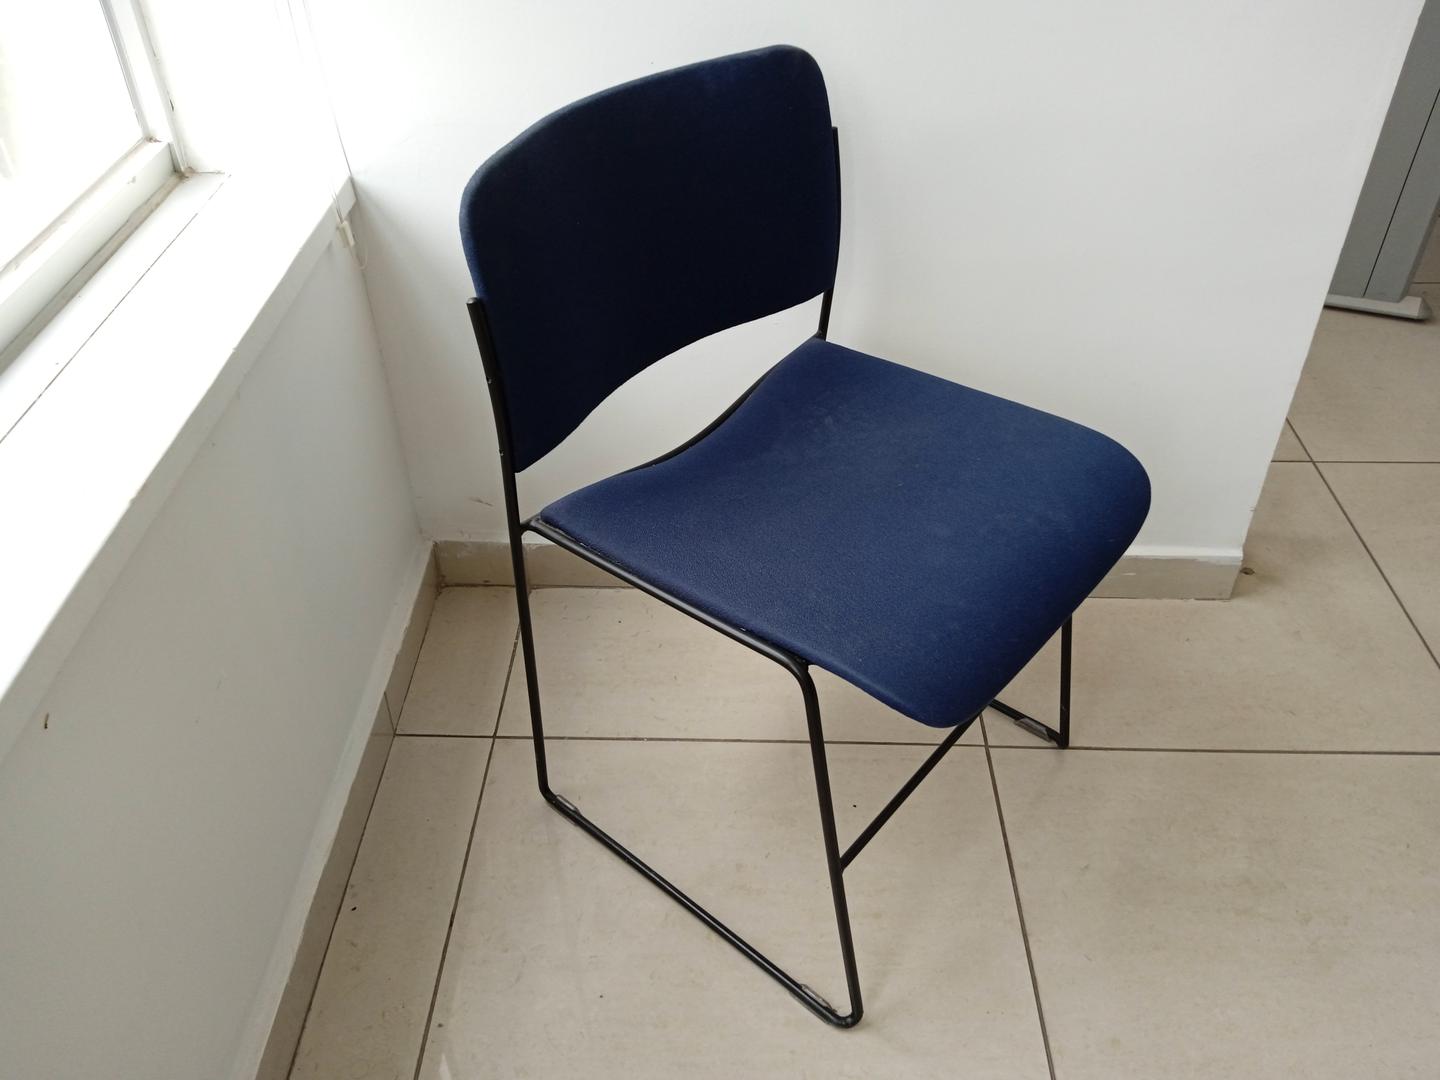 Cadeira fixa estofada s/ braços em Aço / Estofado Azul 90 cm x 49 cm x 57 cm